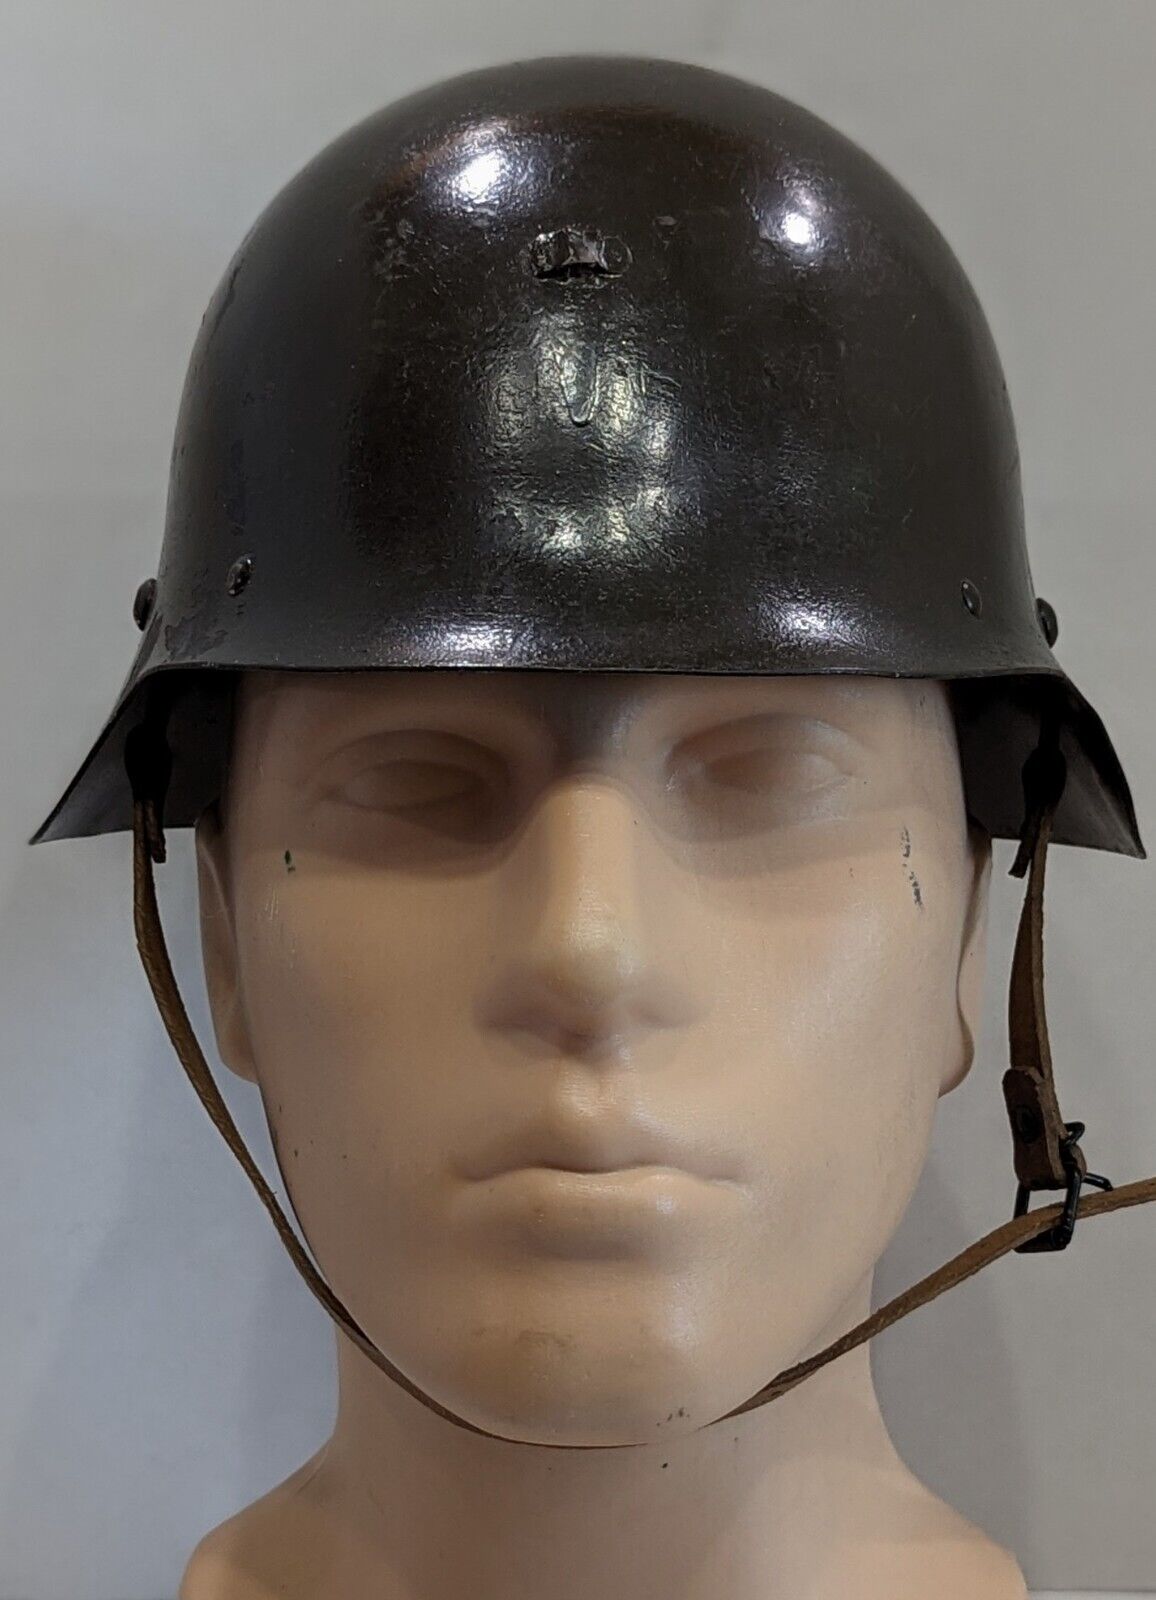 Early Bulgarian world war II helmet